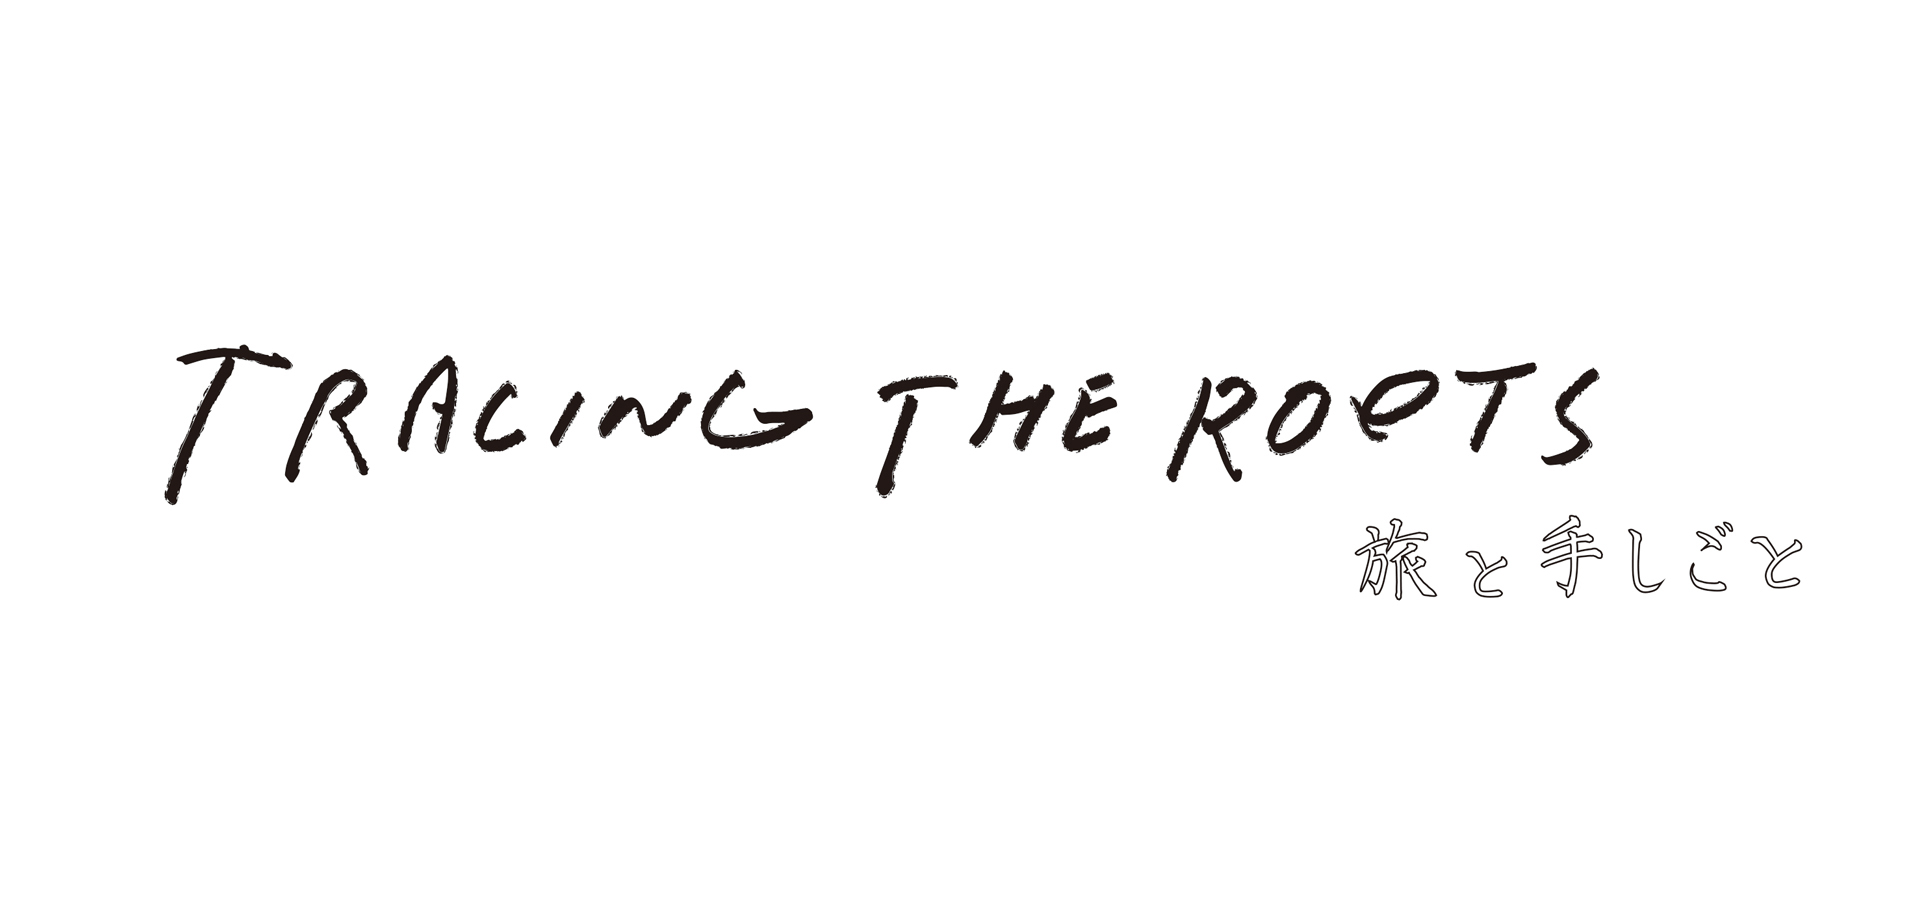 合同展示会&マーケット「TRACING THE ROOTS」 代官山 ヒルサイドフォーラム